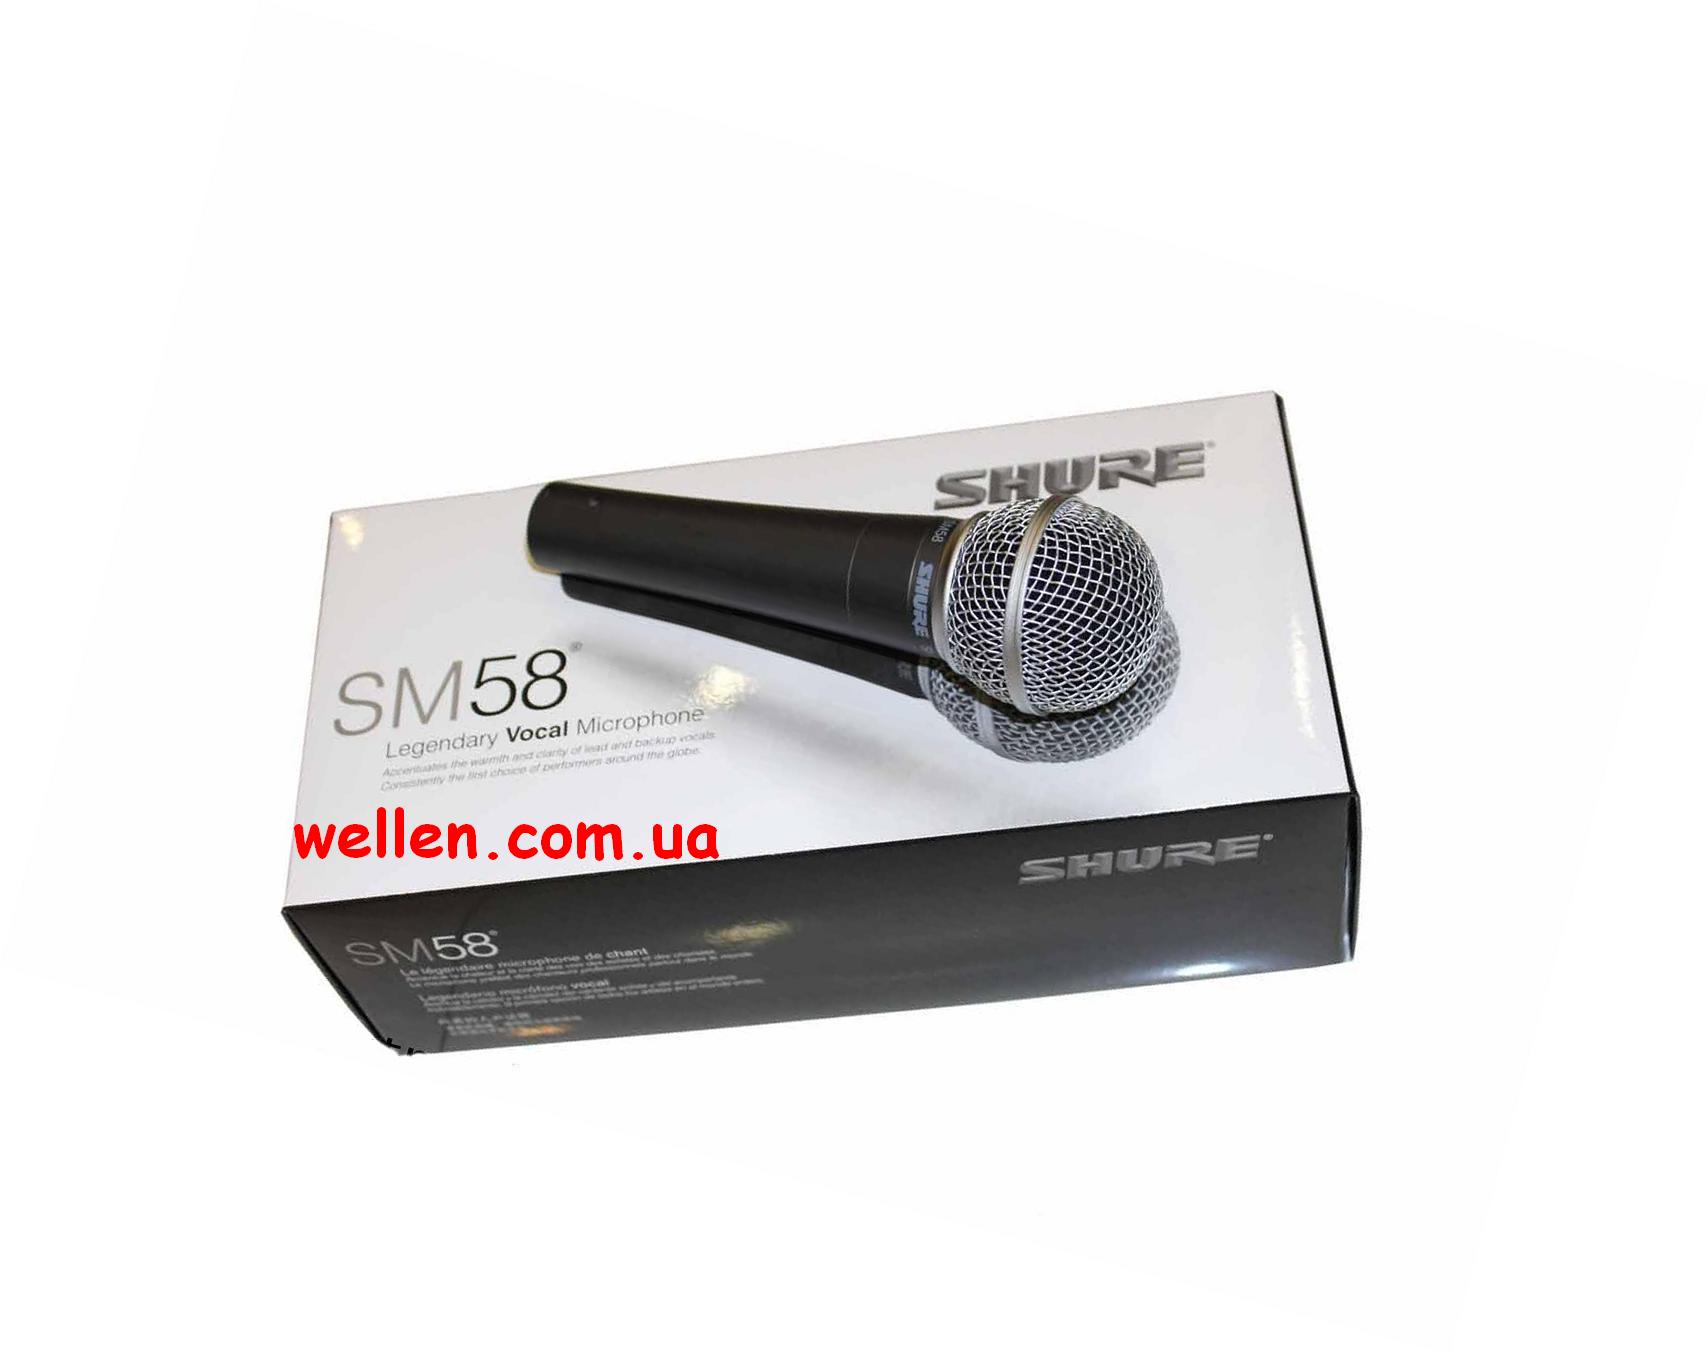 Якісний динамічний шнуровий мікрофон Shure Sm58 вартість 500 грн.